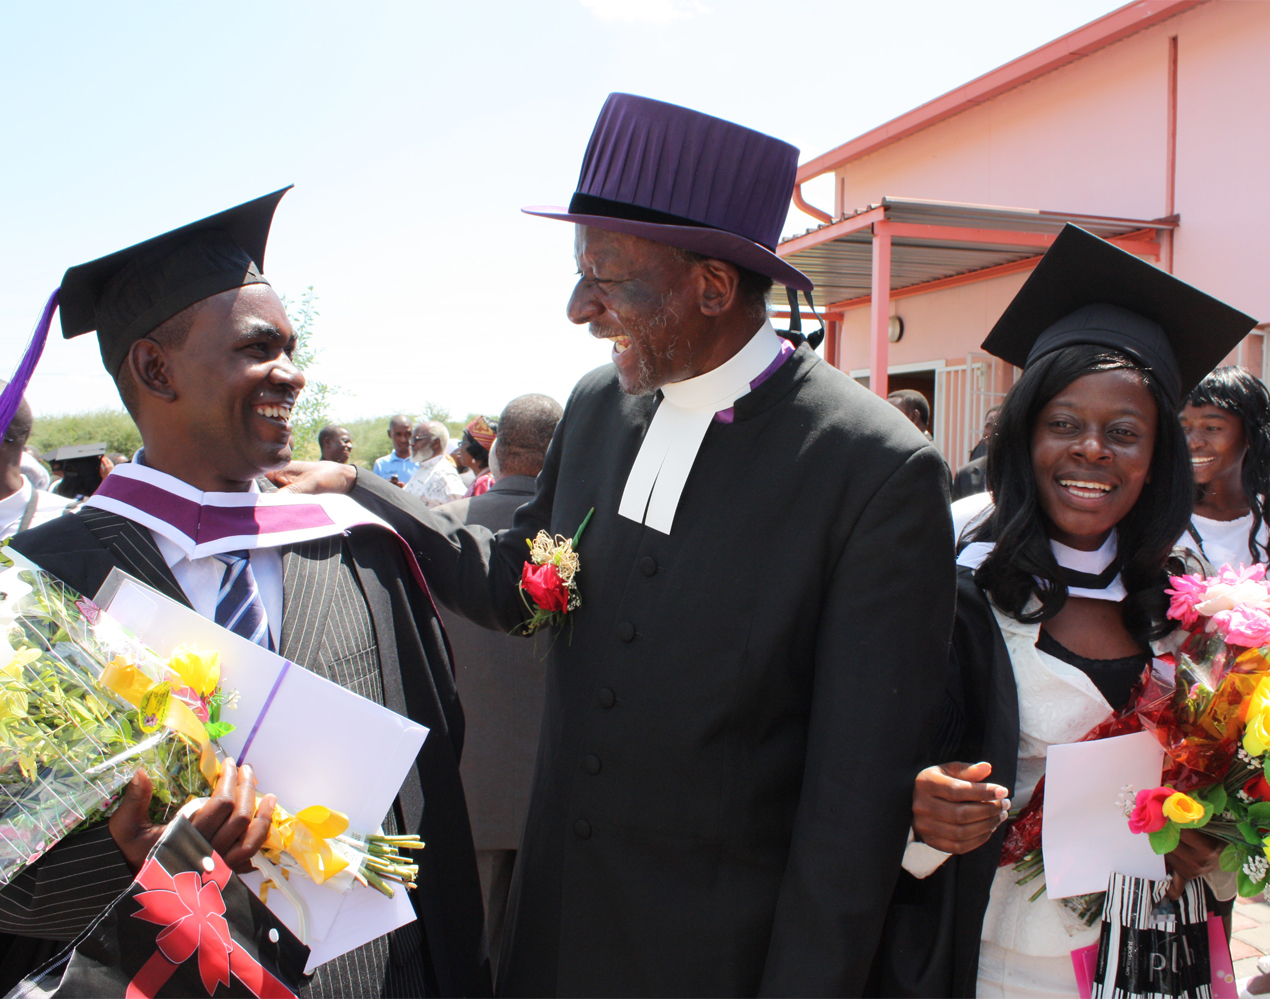 Keskellä naurava papinasuun ja tohtorinhattuun pukeutunut Namibian evankelis-luterilaisen kirkon piispa molemmilla puolillaan iloiset vastavalmistuneet teologit.